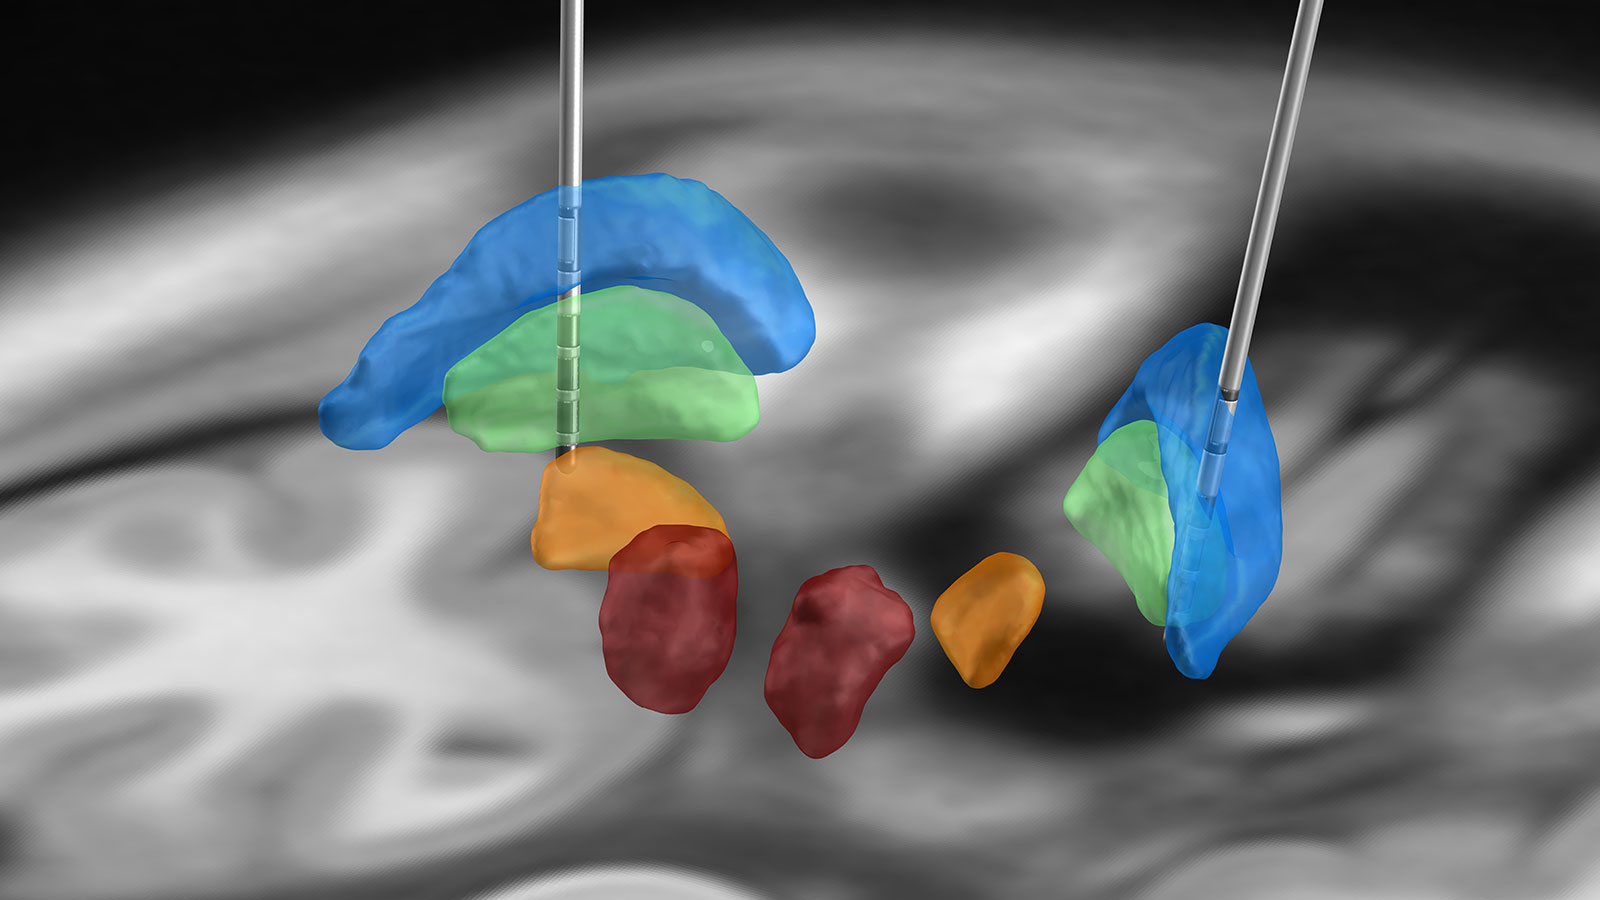 L'illustration montre l'utilisation de deux électrodes SCP dans la zone du globus pallidus interne (marqué en vert) pour traiter une dystonie.